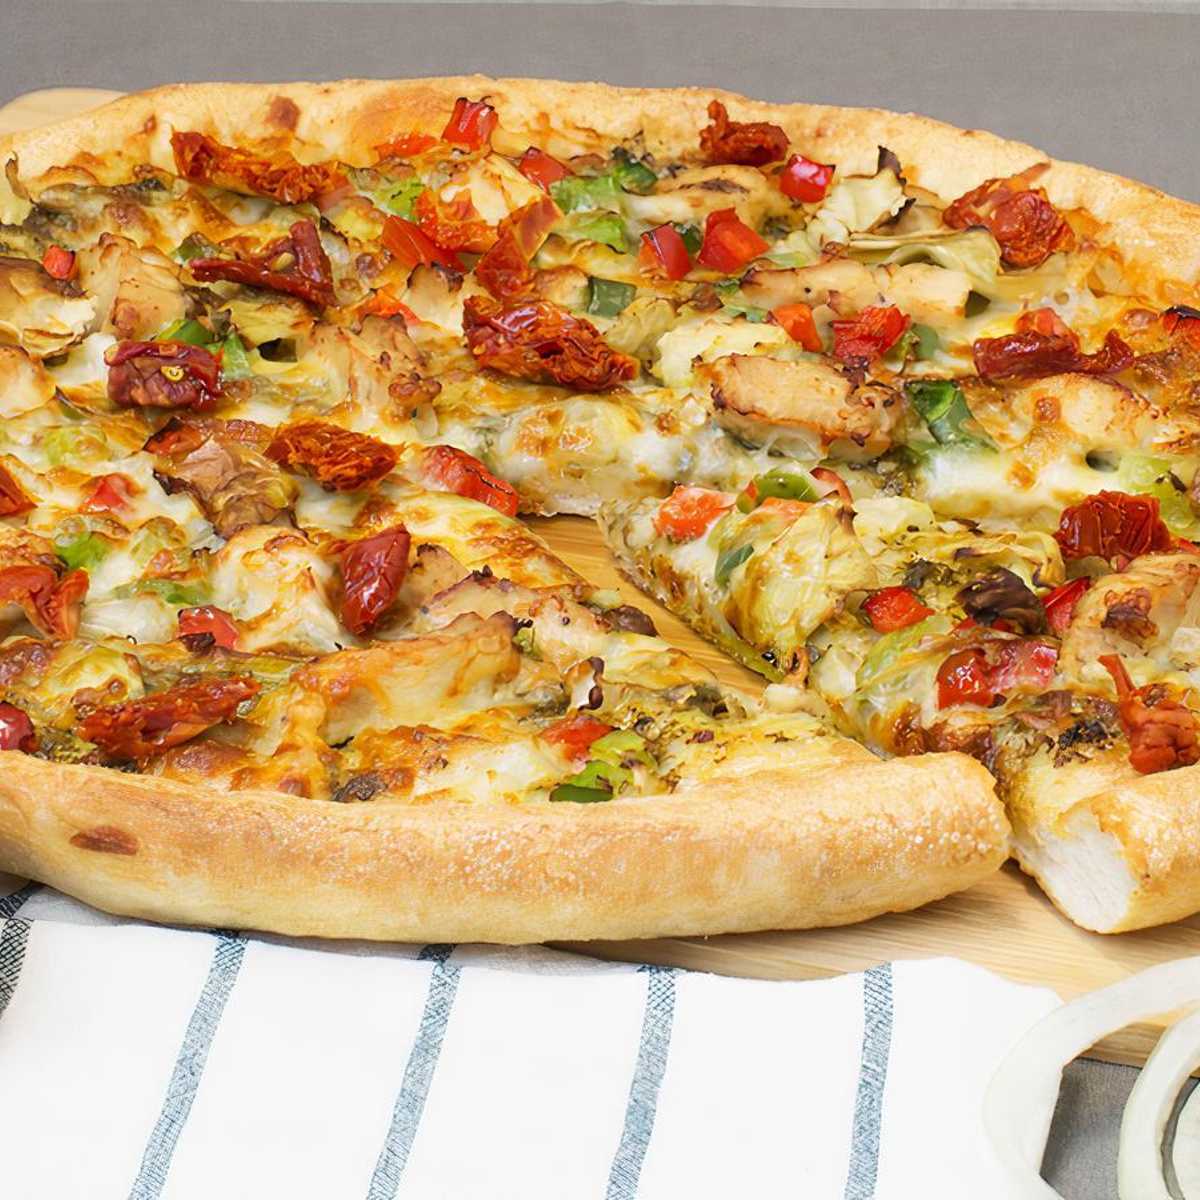 Sarpino's Pizzeria Delivery Menu | 1852 North Damen Avenue Chicago -  DoorDash